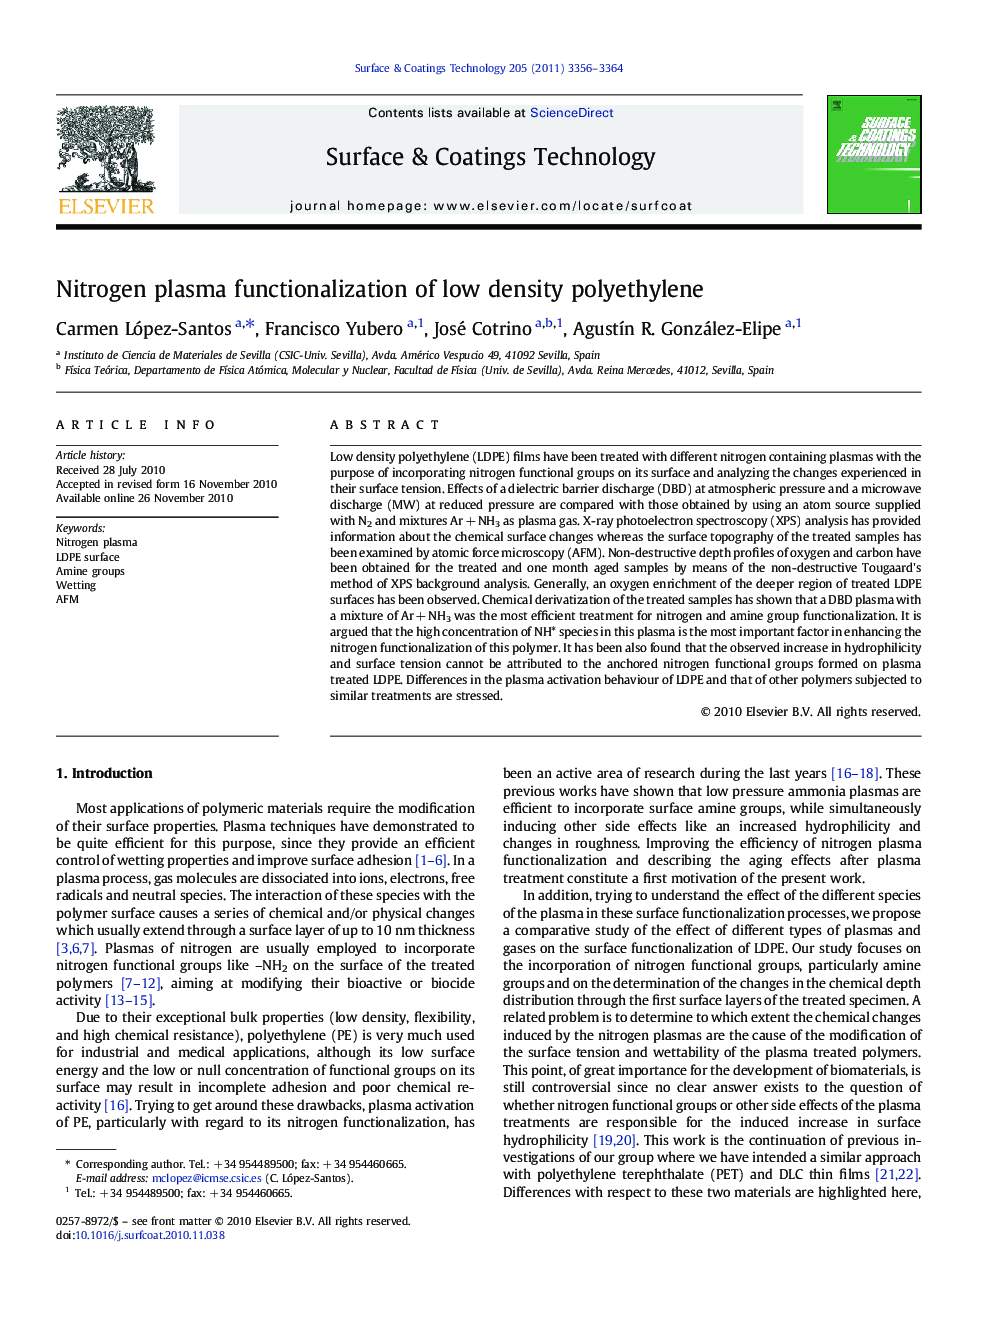 Nitrogen plasma functionalization of low density polyethylene